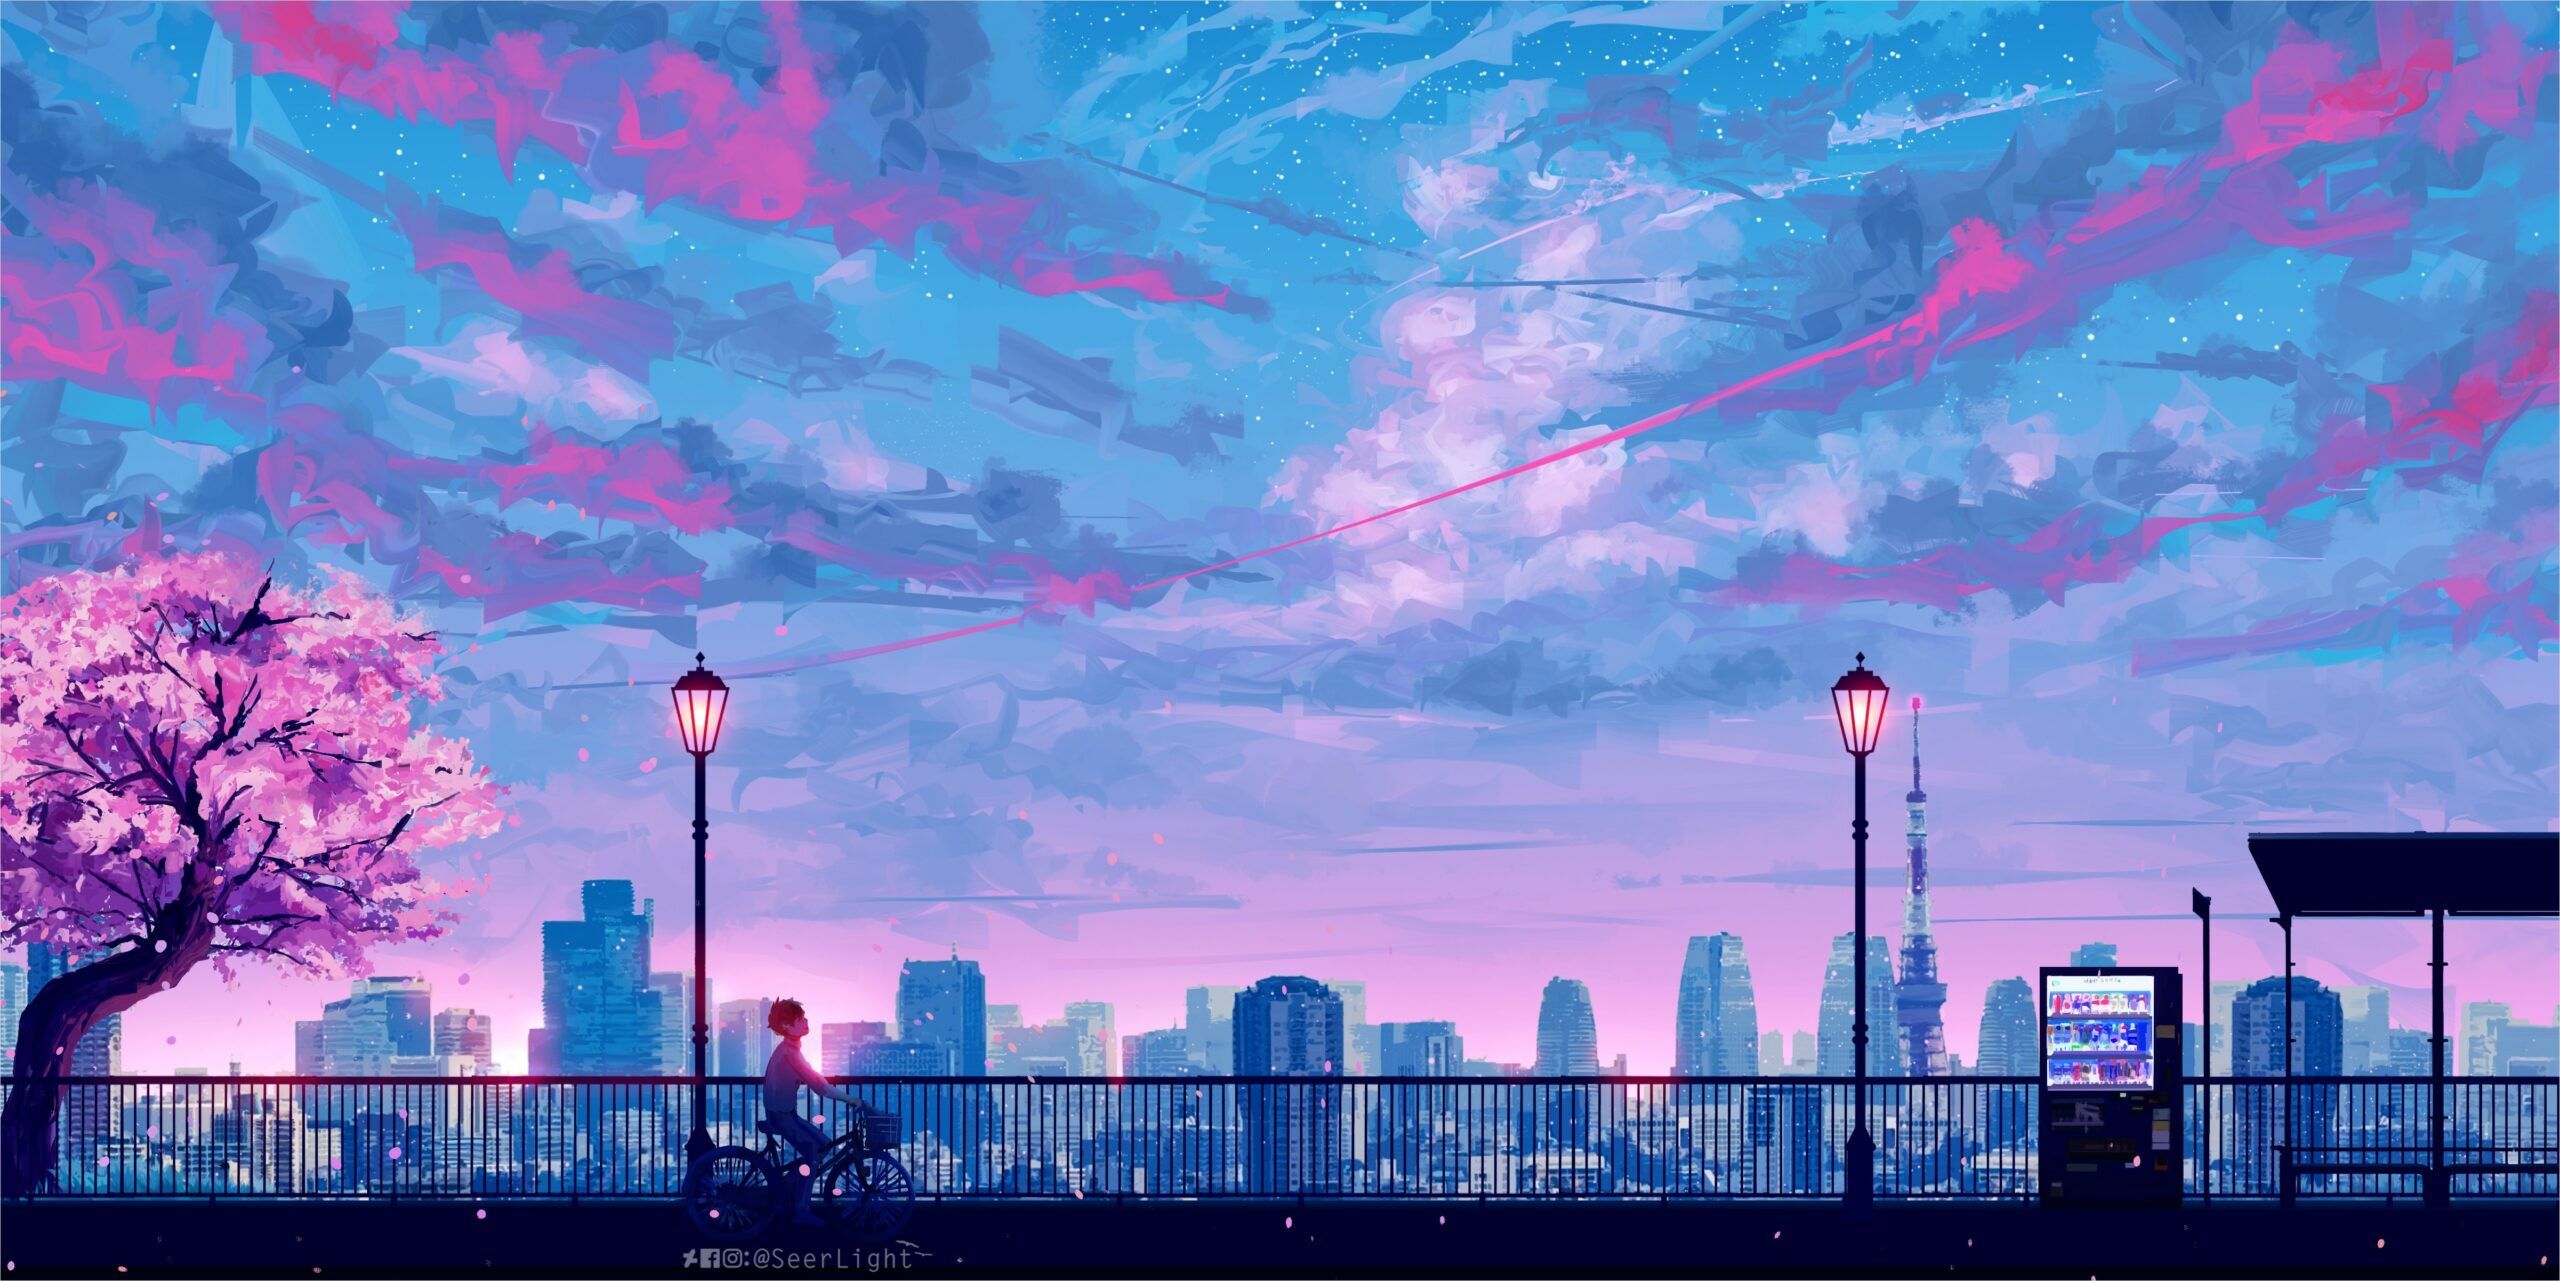 4k Anime Landscape Wallpaper. Aesthetic desktop wallpaper, Scenery wallpaper, Desktop wallpaper art